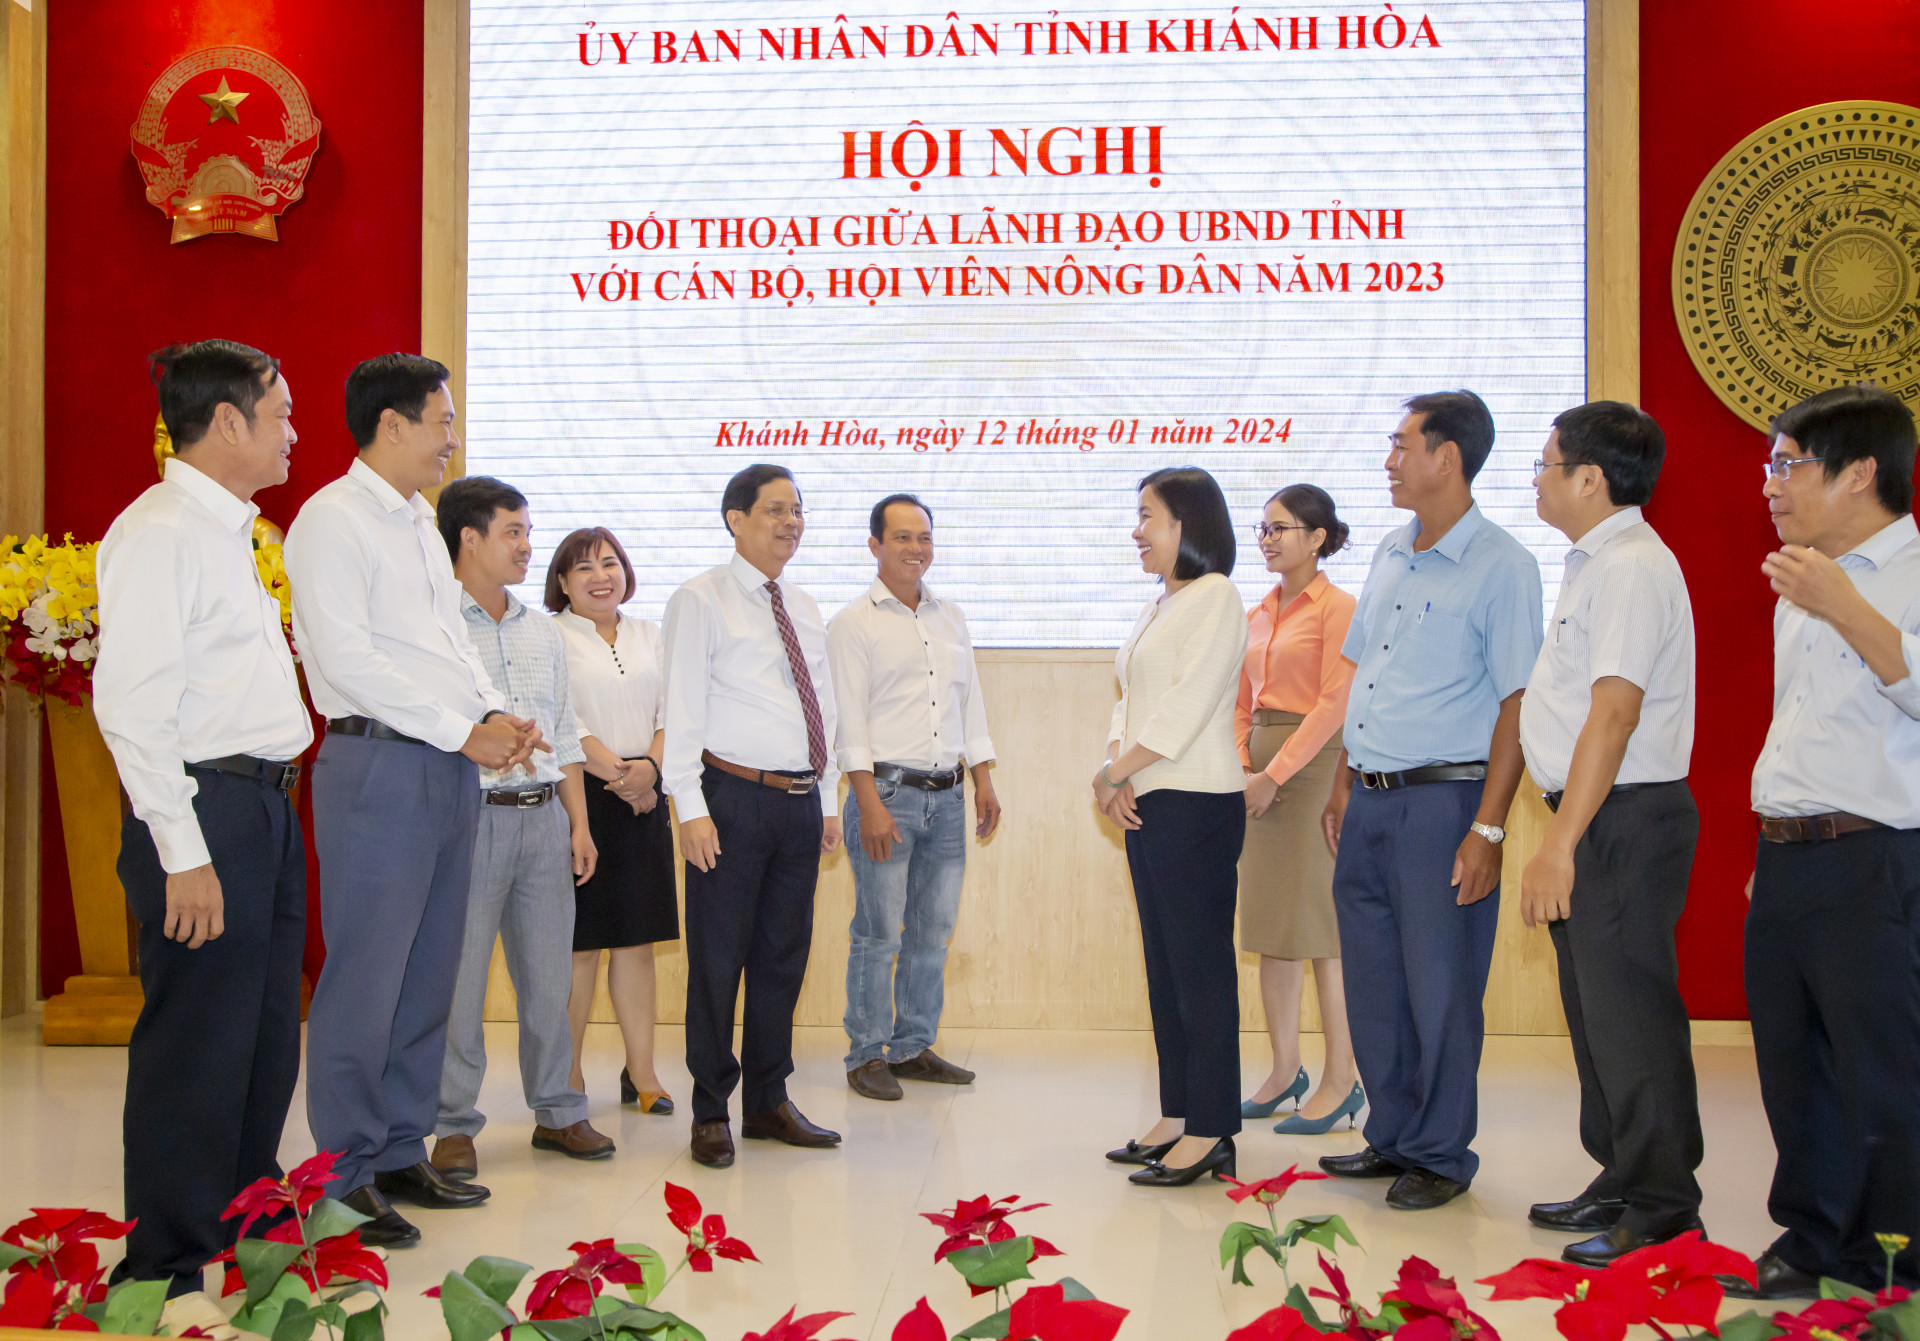 Chủ tịch UBND tỉnh Nguyễn Tấn Tuân trao đổi với hội viên nông dân.